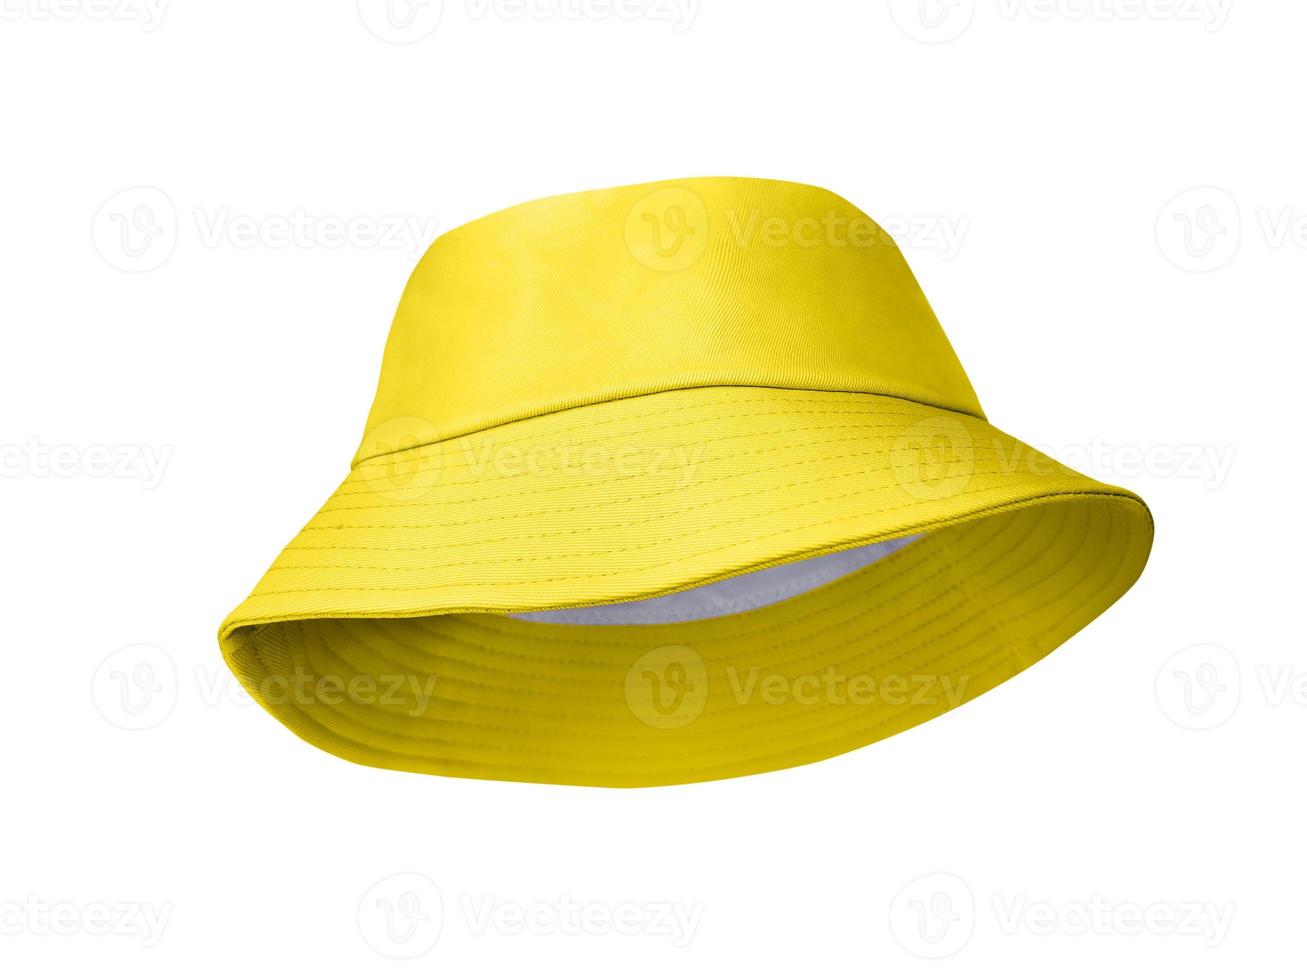 chapéu de balde amarelo isolado no fundo branco foto